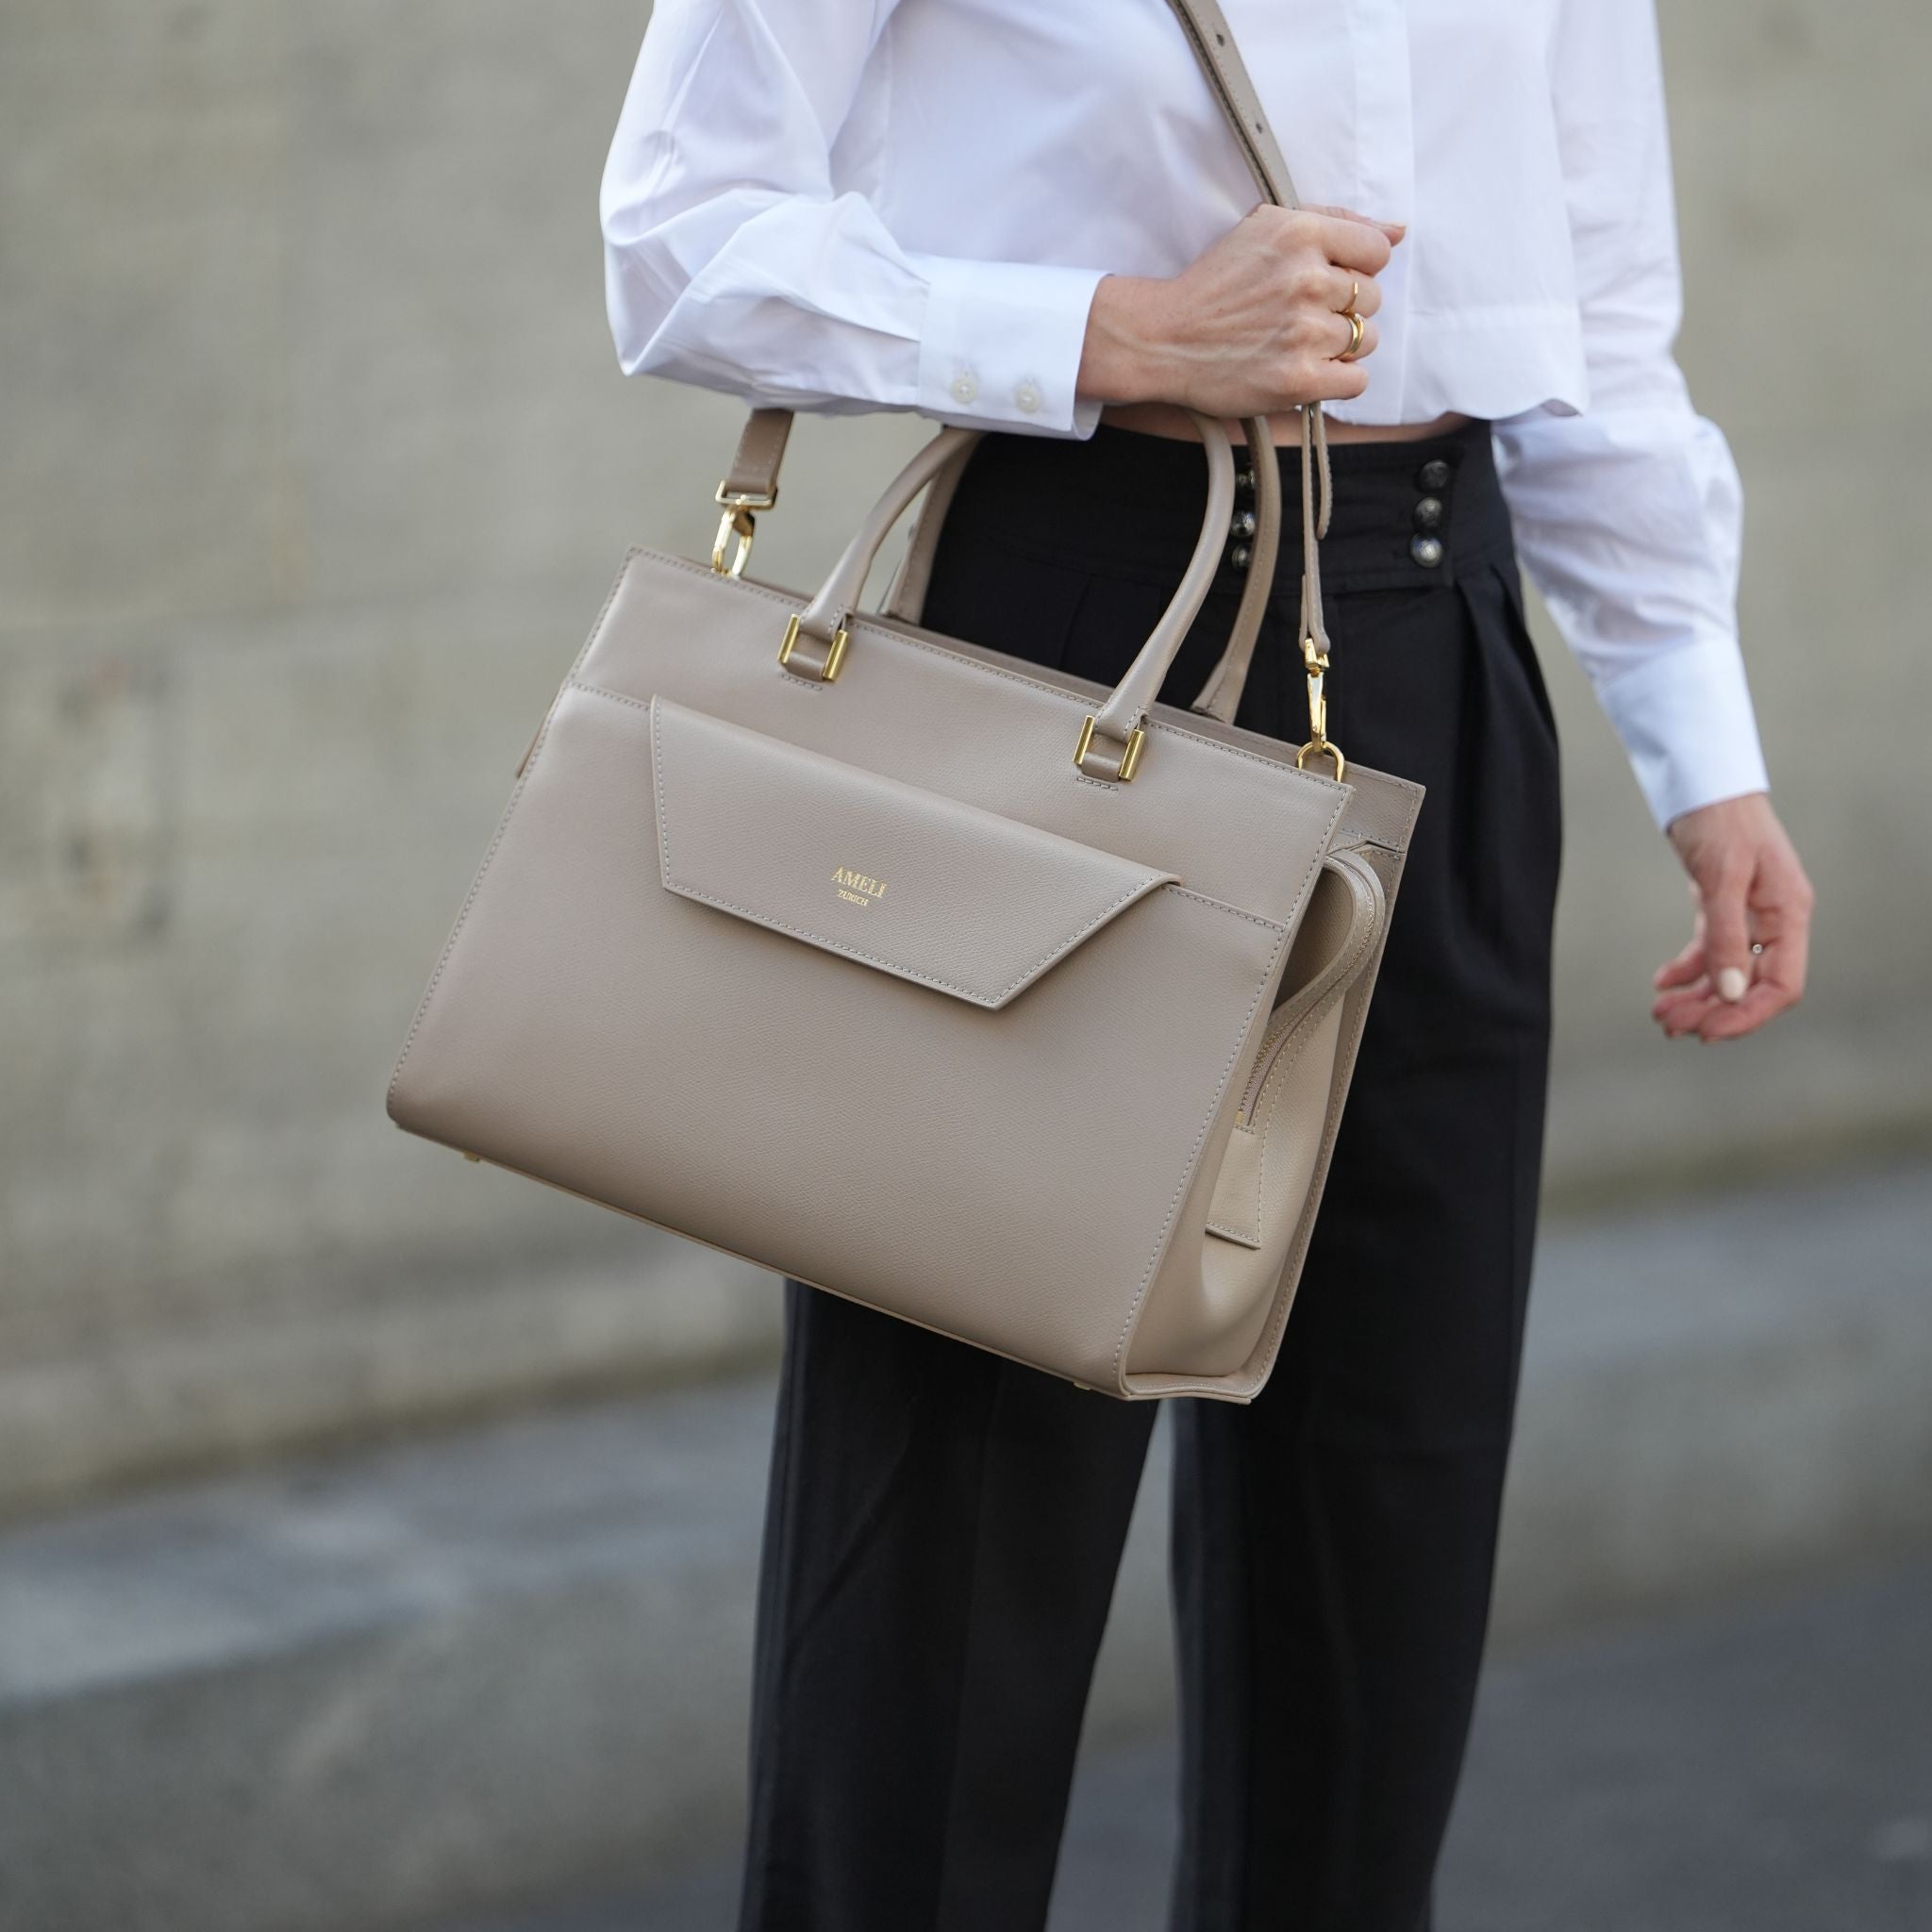 CENTRAL by AMELI Zurich | Minimal, elegant and sustainable work bags for  women | Arbeitstasche, Lederhandtaschen, Taschen